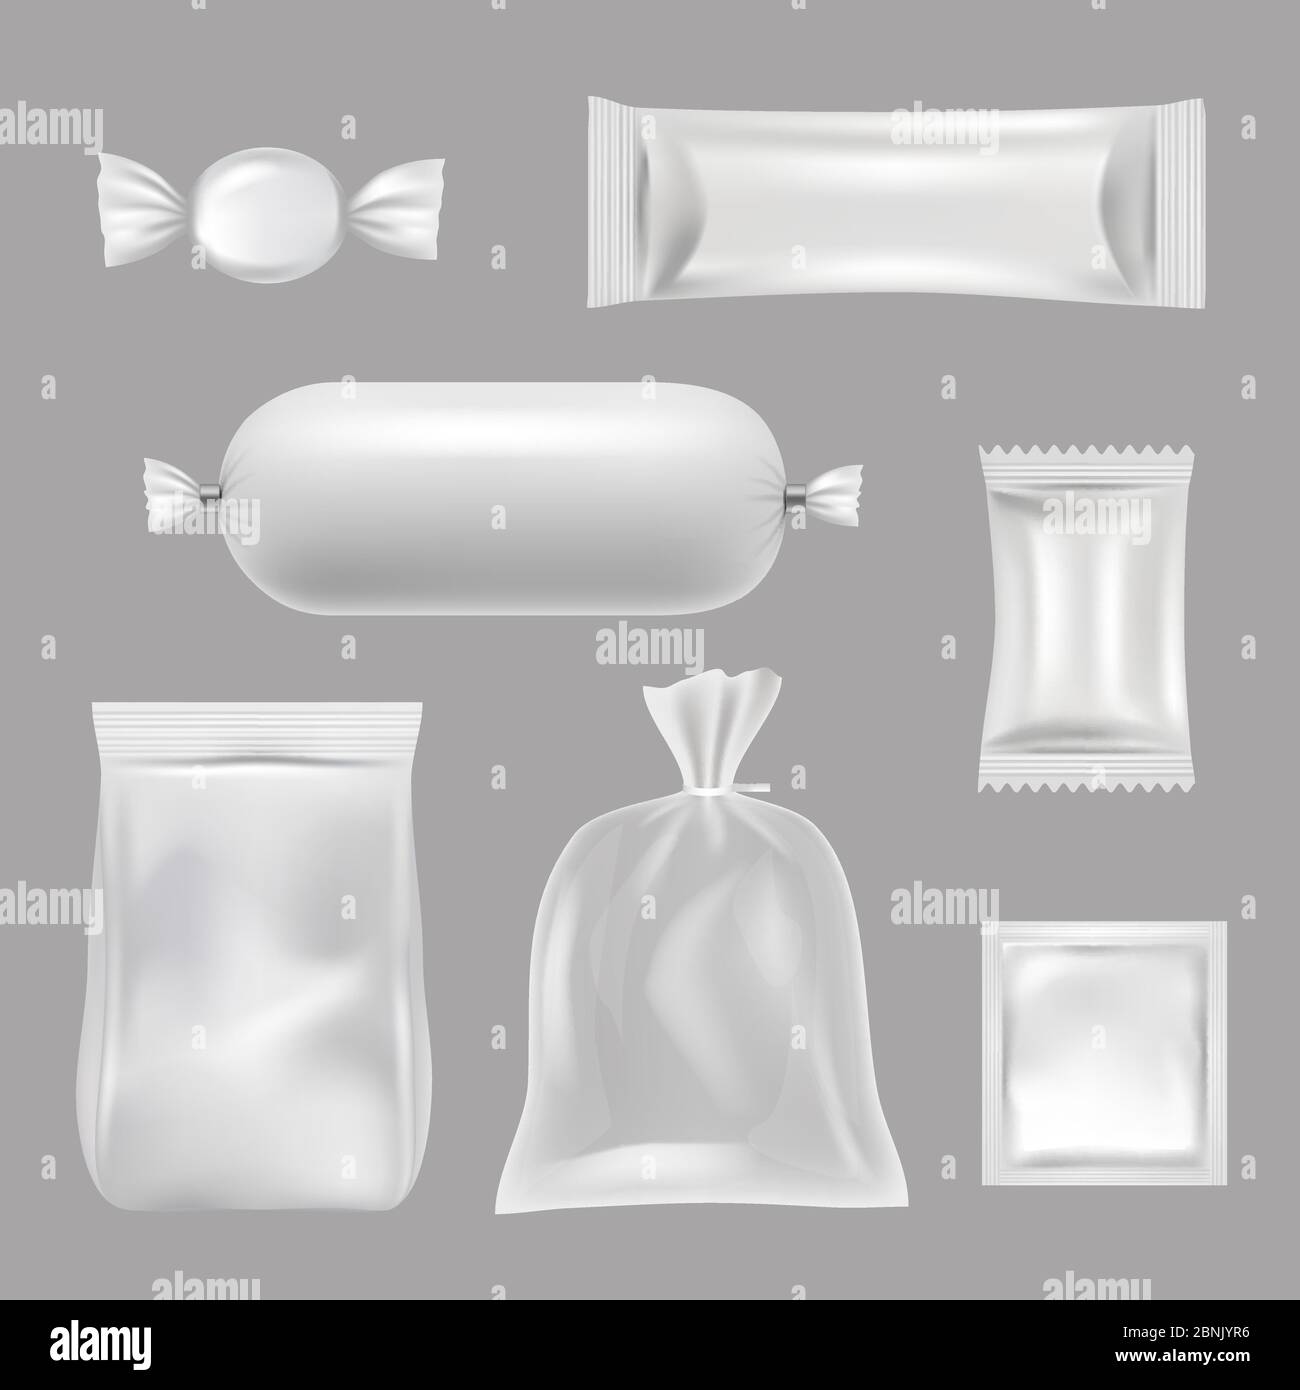 Ilustración Vectorial De Una Bolsa De Plástico Vector De Bolsa De Plástico  Ilustraciones svg, vectoriales, clip art vectorizado libre de derechos.  Image 181620458